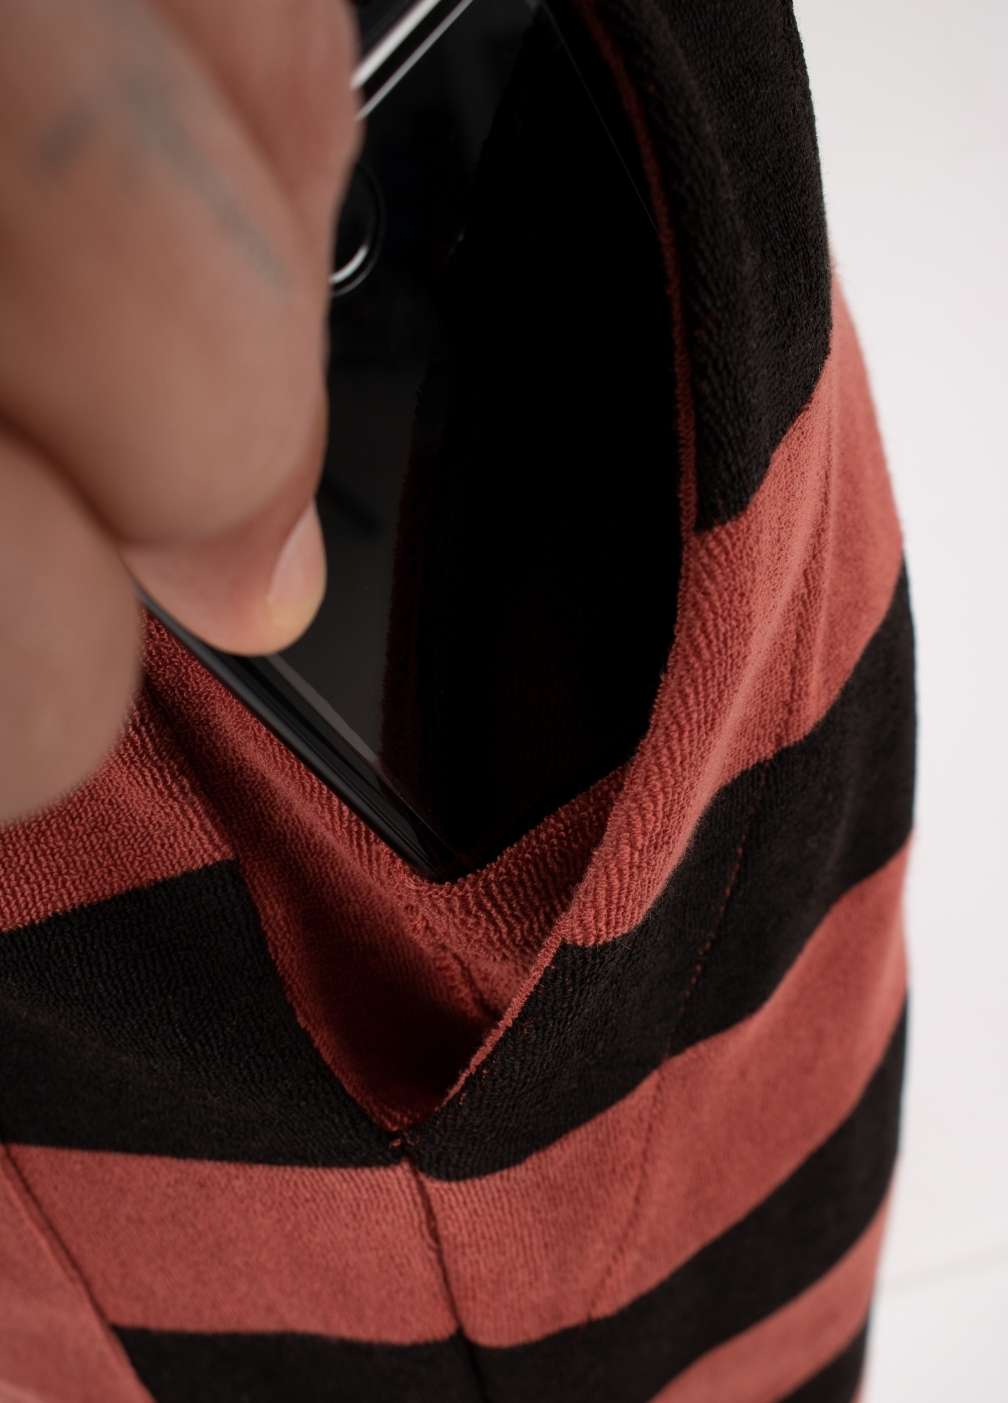 TANDOORI SPICE TOWEL SHORTS ST closeup - phone pocket - men's shorts with hidden pocket for smartphones